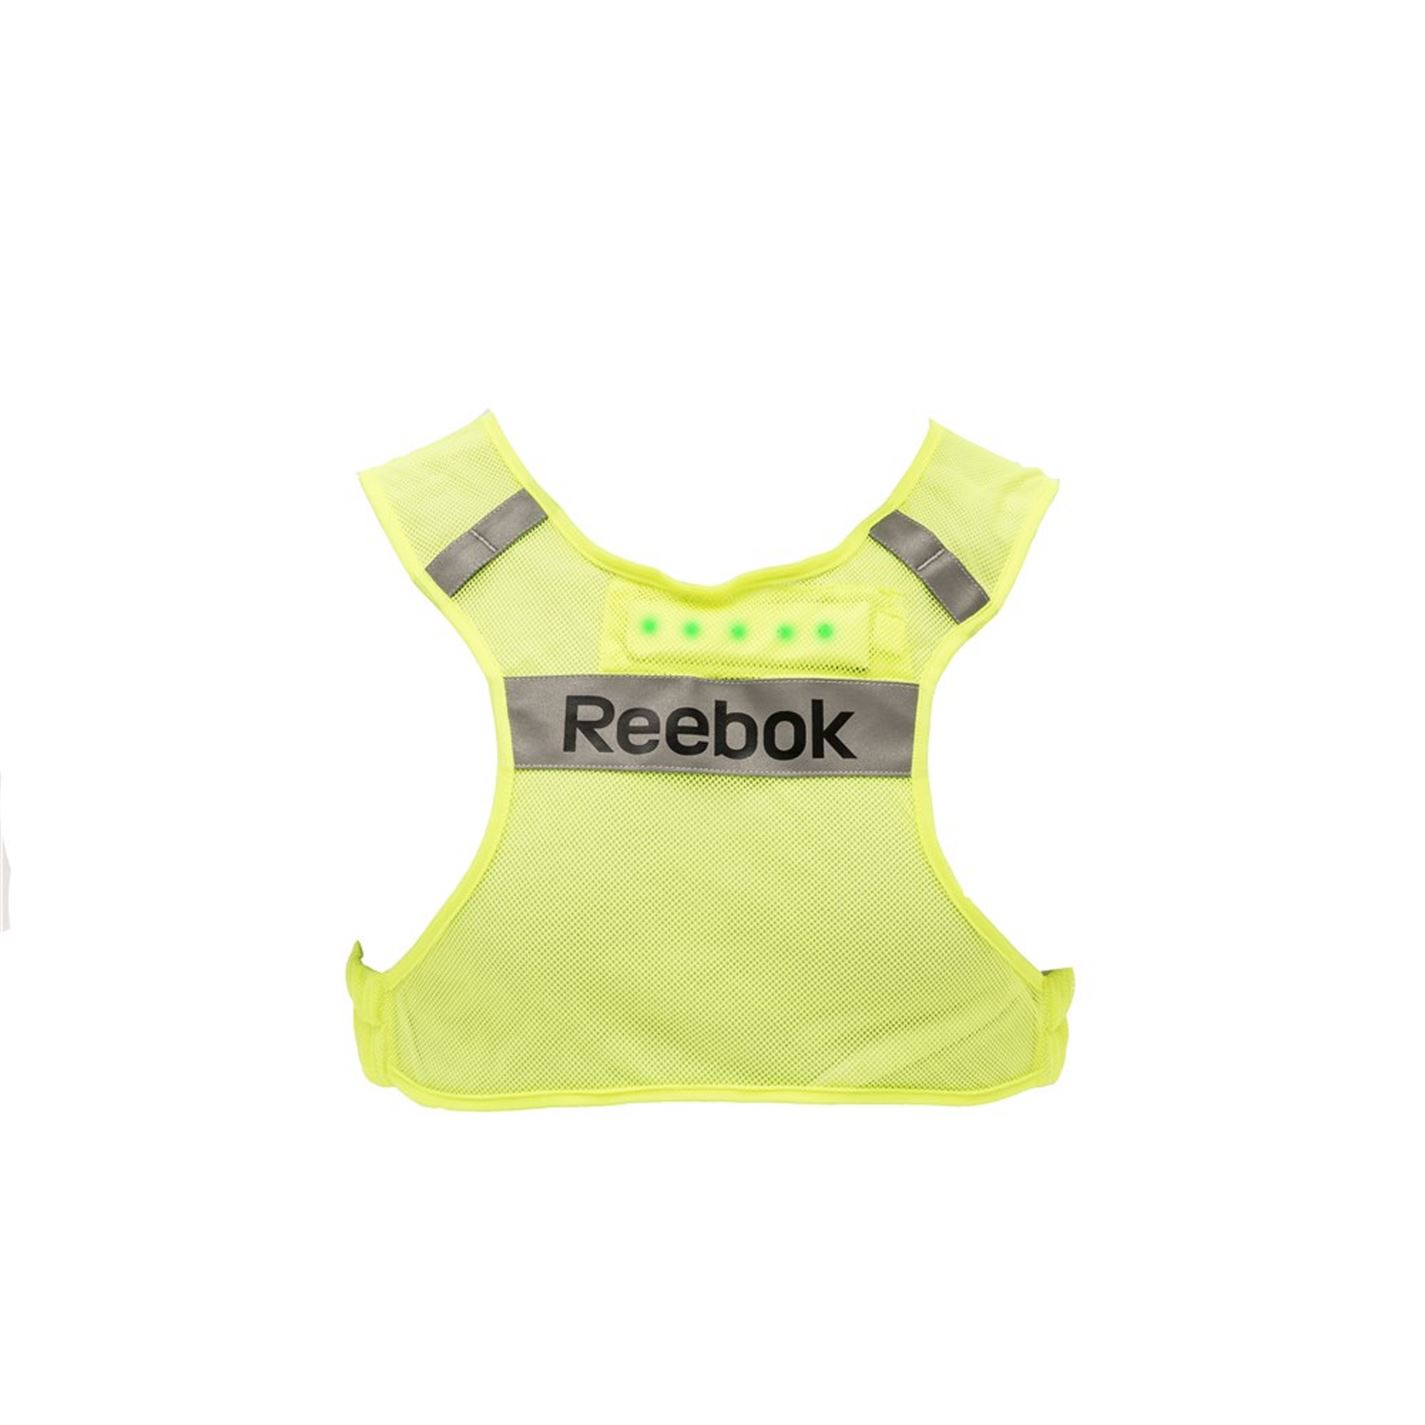 Reebok LED Running Vest